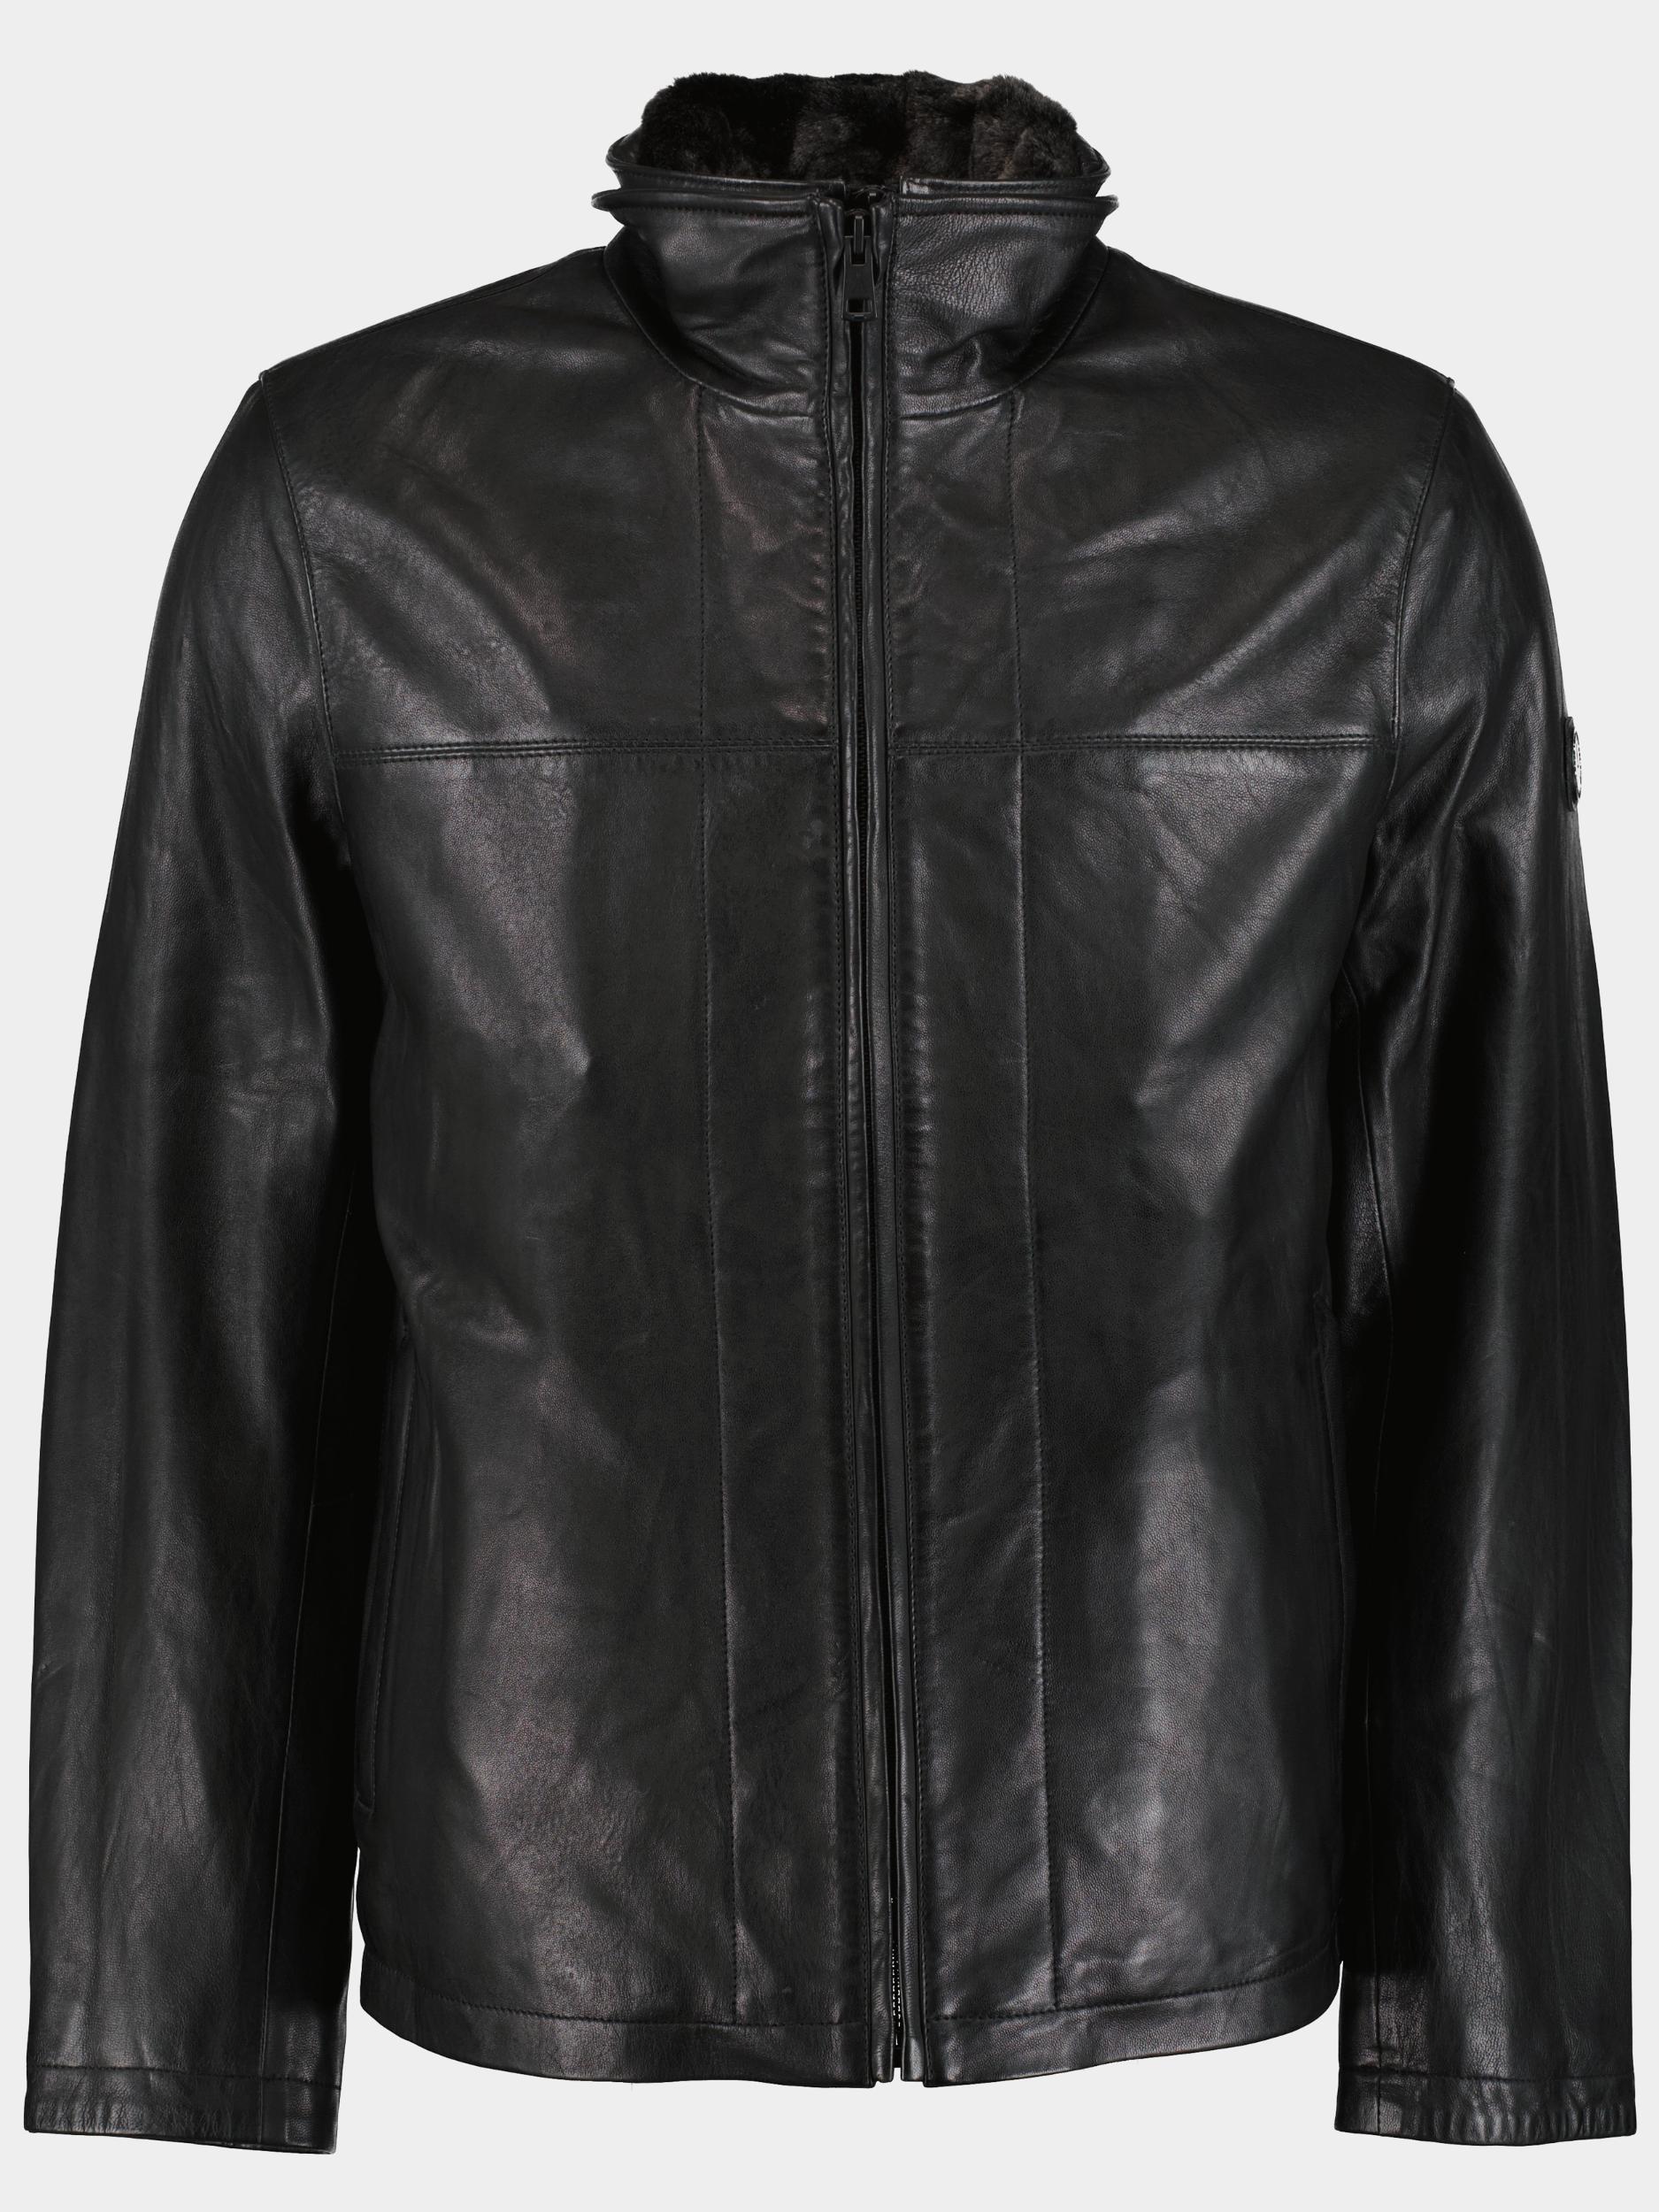 Afbeelding van Donders 1860 Lederen jack leather jacket 398/999